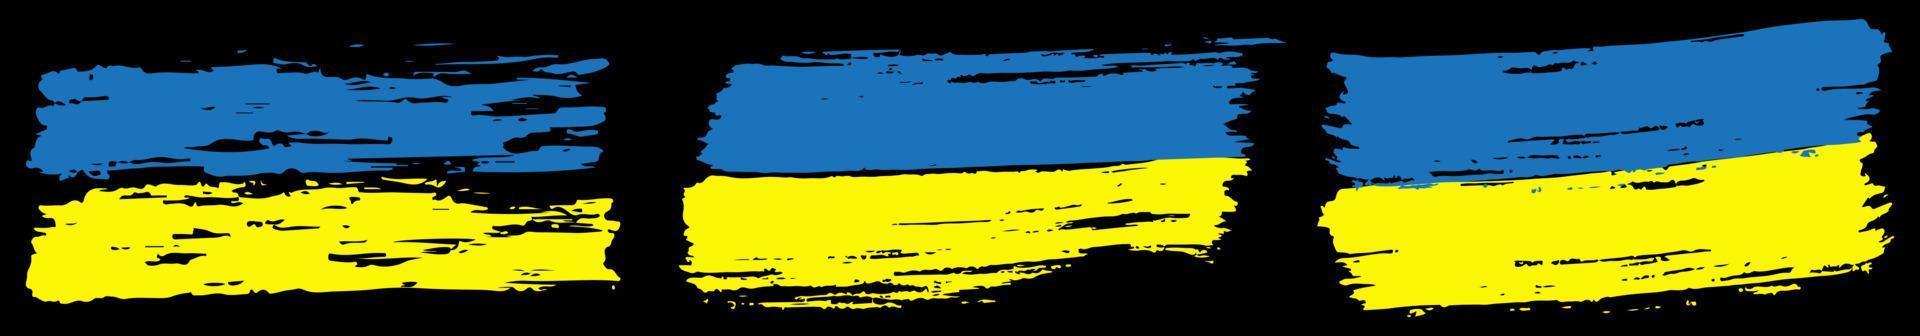 frotis salpicadura cepillo estilo grunge. bandera de ucrania, preparada para imprimir camisetas, papelería, plantilla de fondo. ilustración vectorial aislada. vector